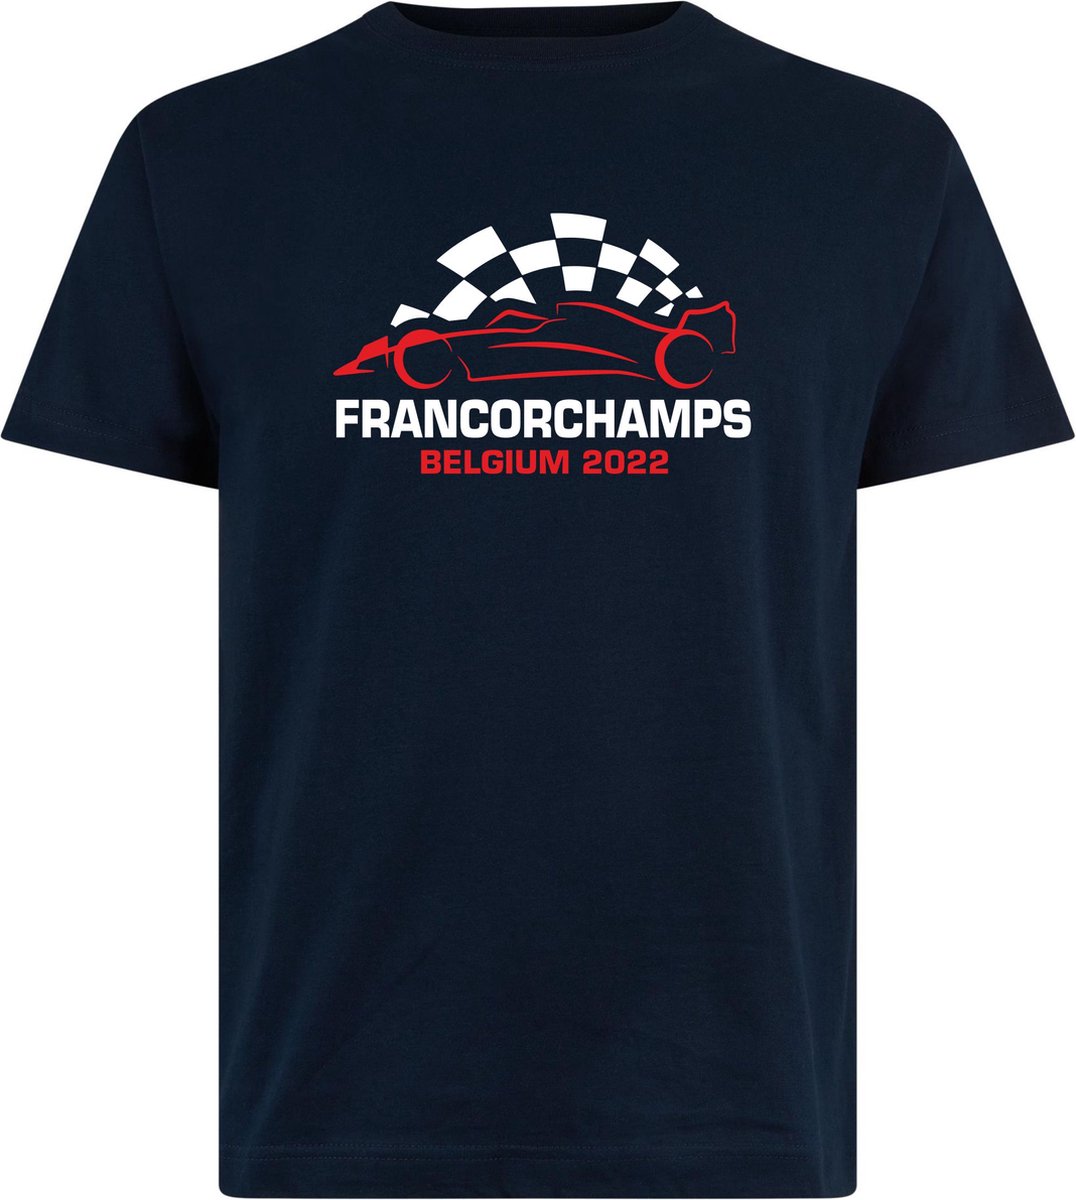 T-shirt kinderen Francorchamps Belgium 2022 met raceauto | Max Verstappen / Red Bull Racing / Formule 1 fan | Grand Prix Circuit Spa-Francorchamps | kleding shirt | Navy | maat 116